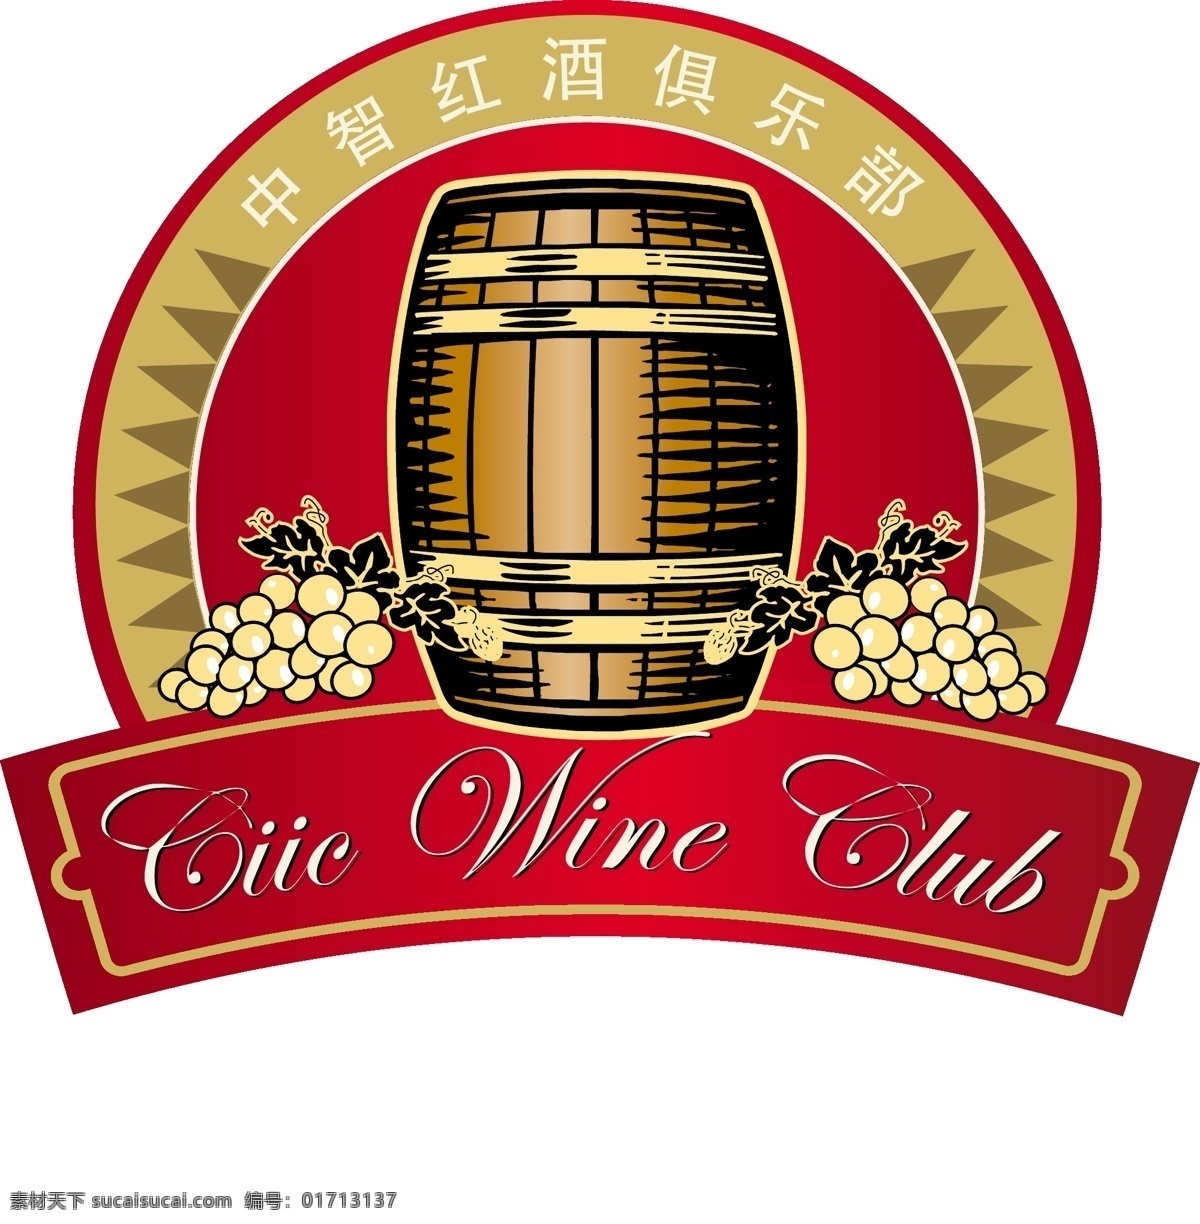 葡萄酒 logo 标识标志图标 红酒 企业 标志 矢量 模板下载 psd源文件 logo设计